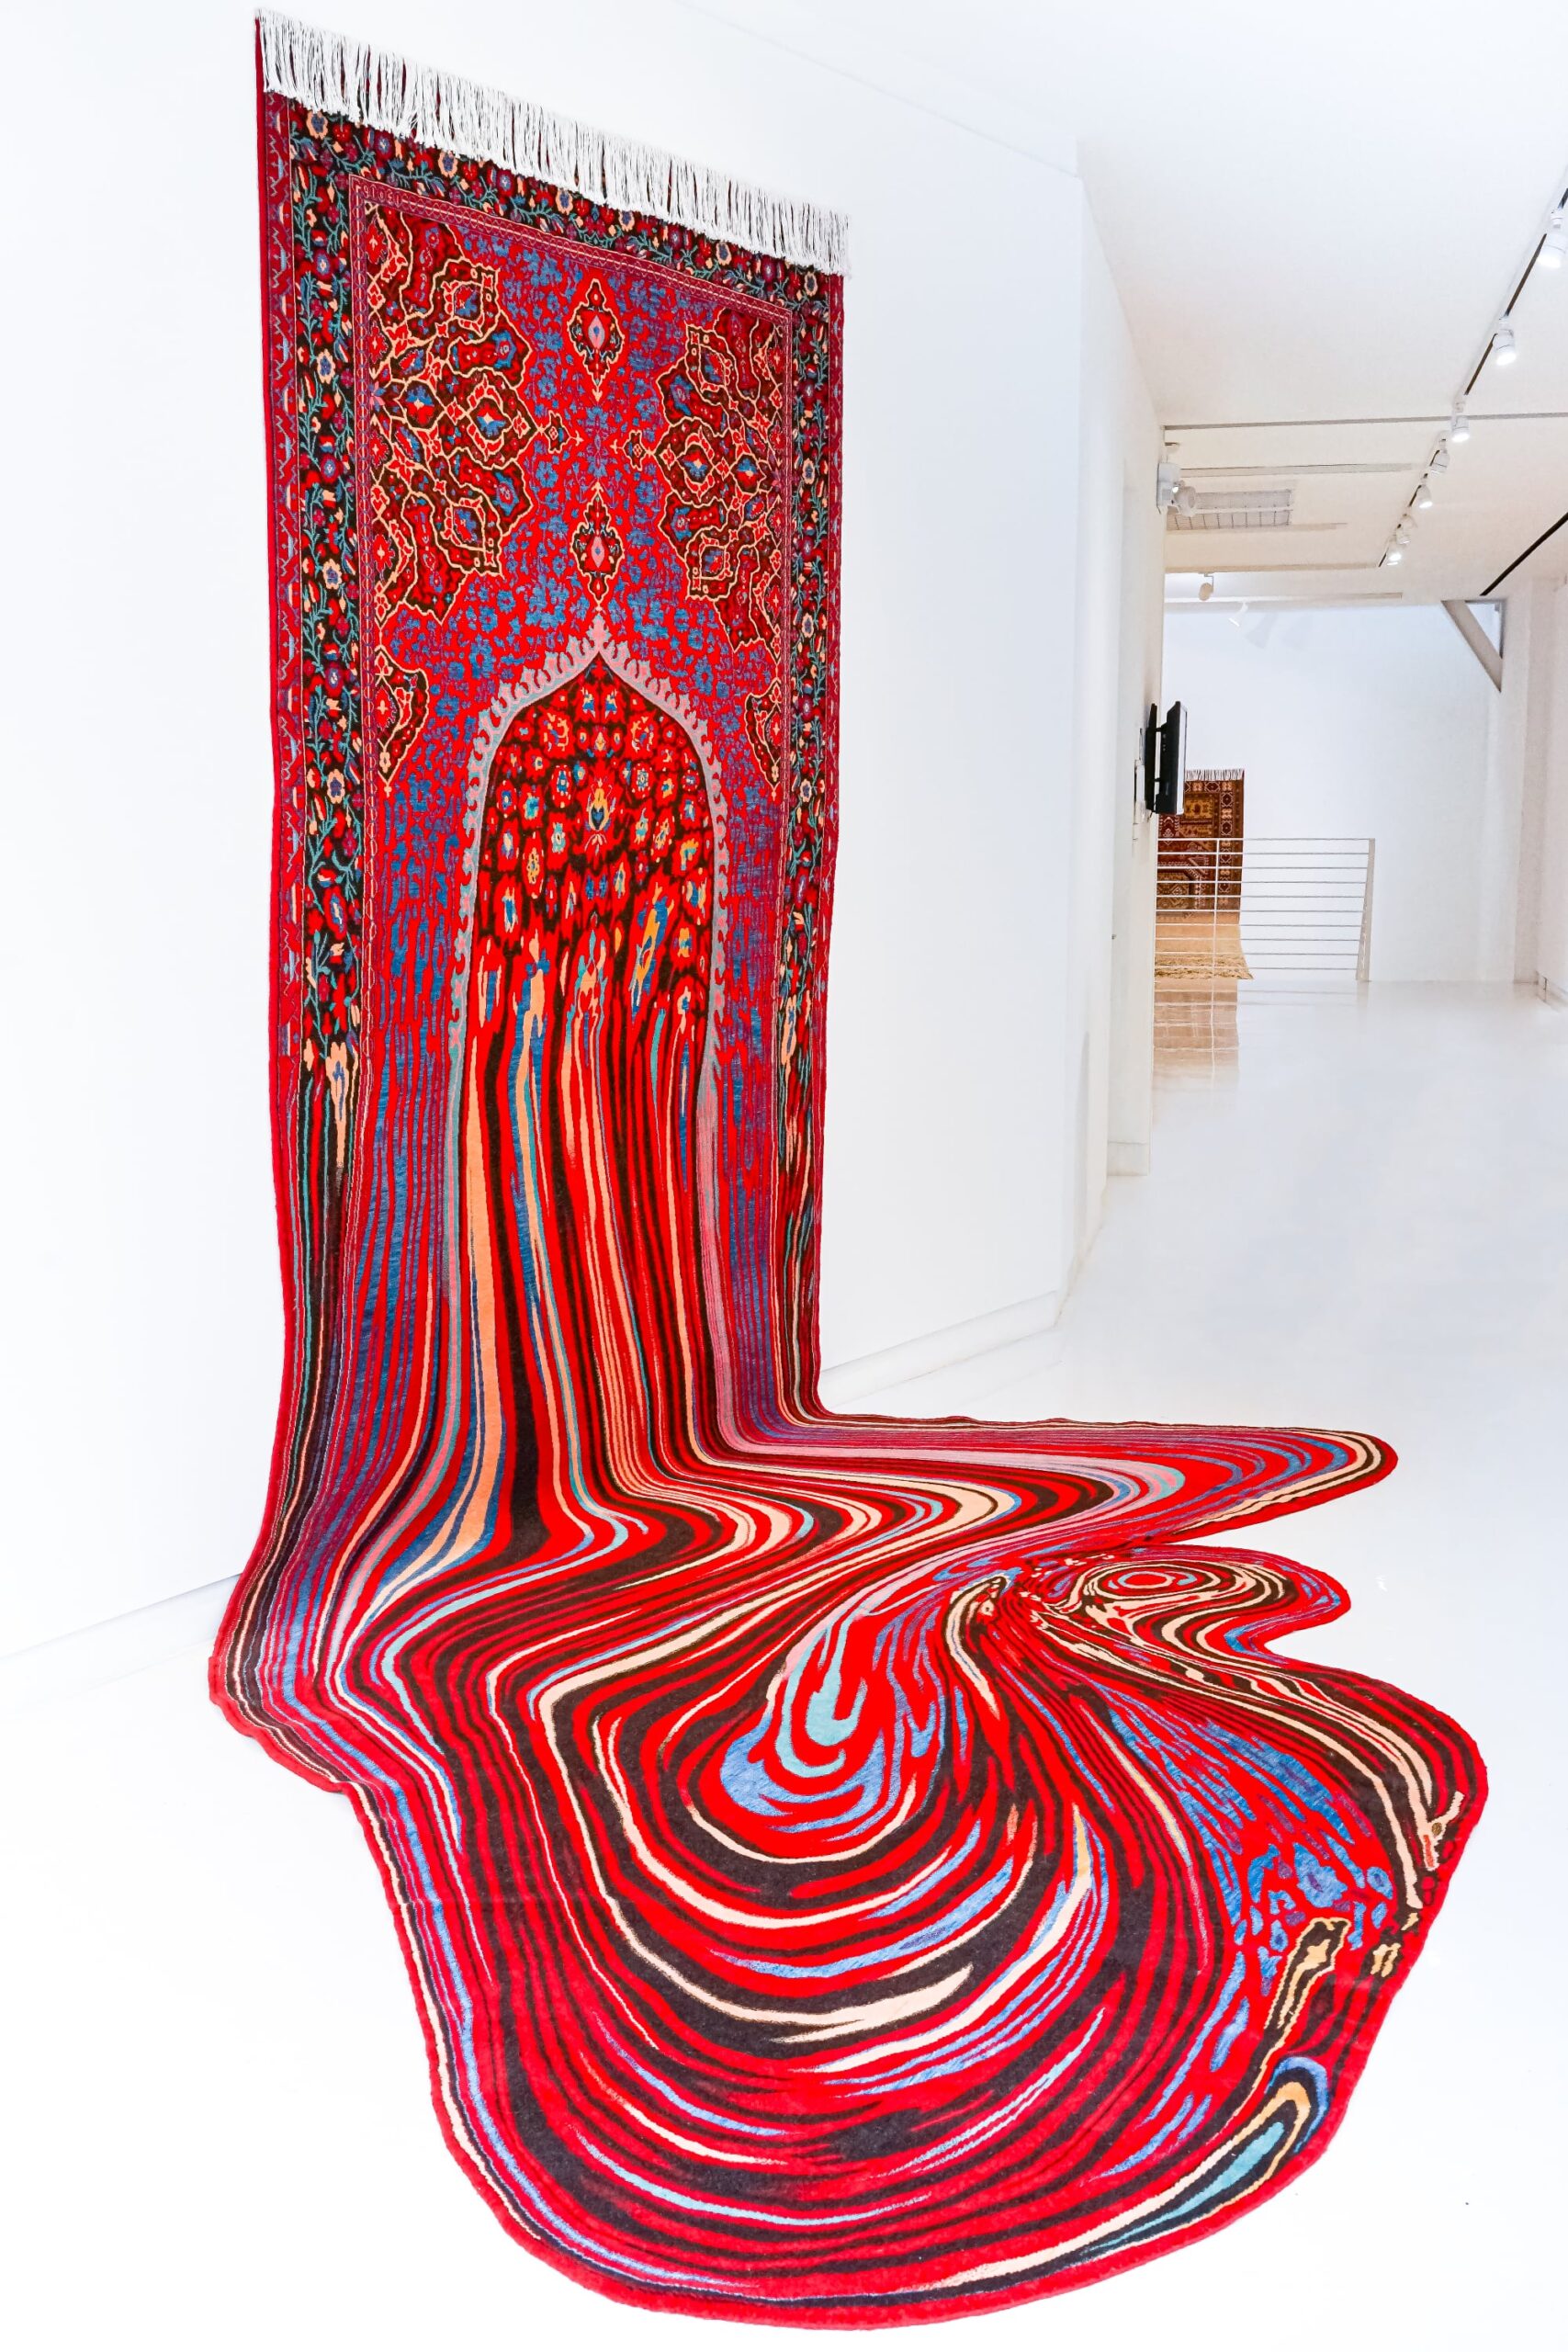 Sierlijke tapijten van kunstenaar Faig Ahmed sijpelen op de vloer in druipende stoffen plassen